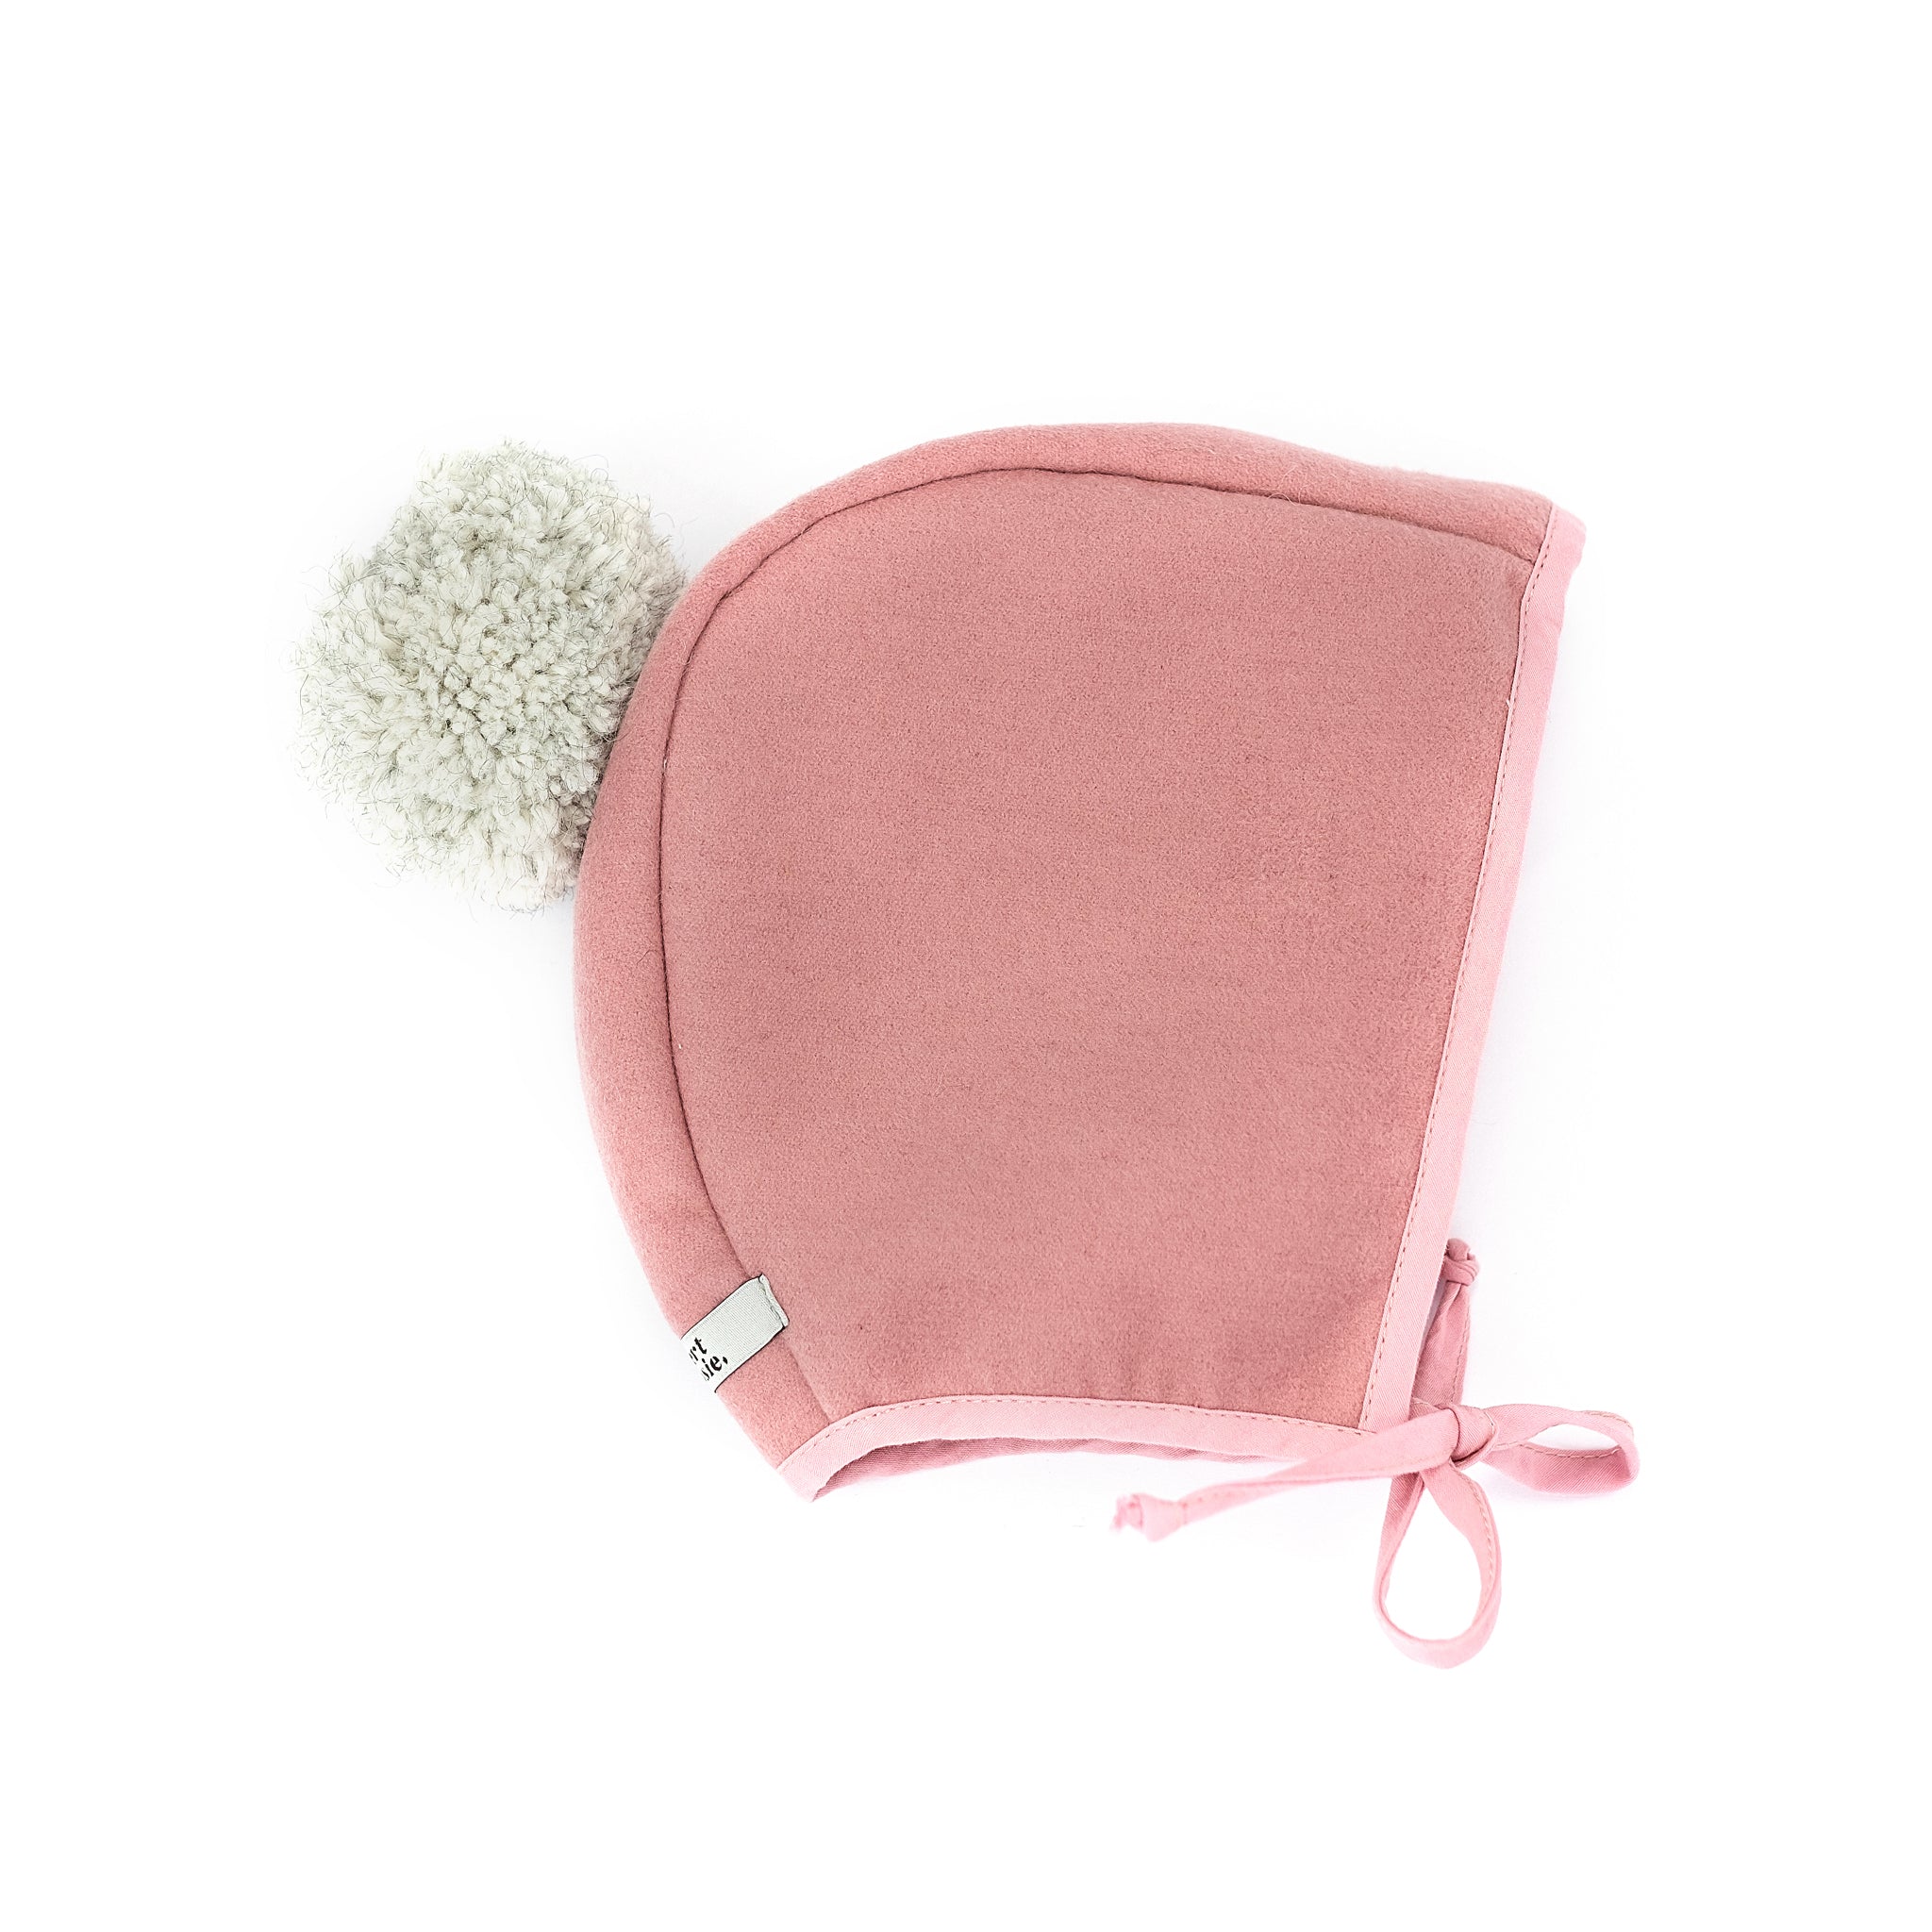 Melton Bonnet - Pink with Grey Pom Pom